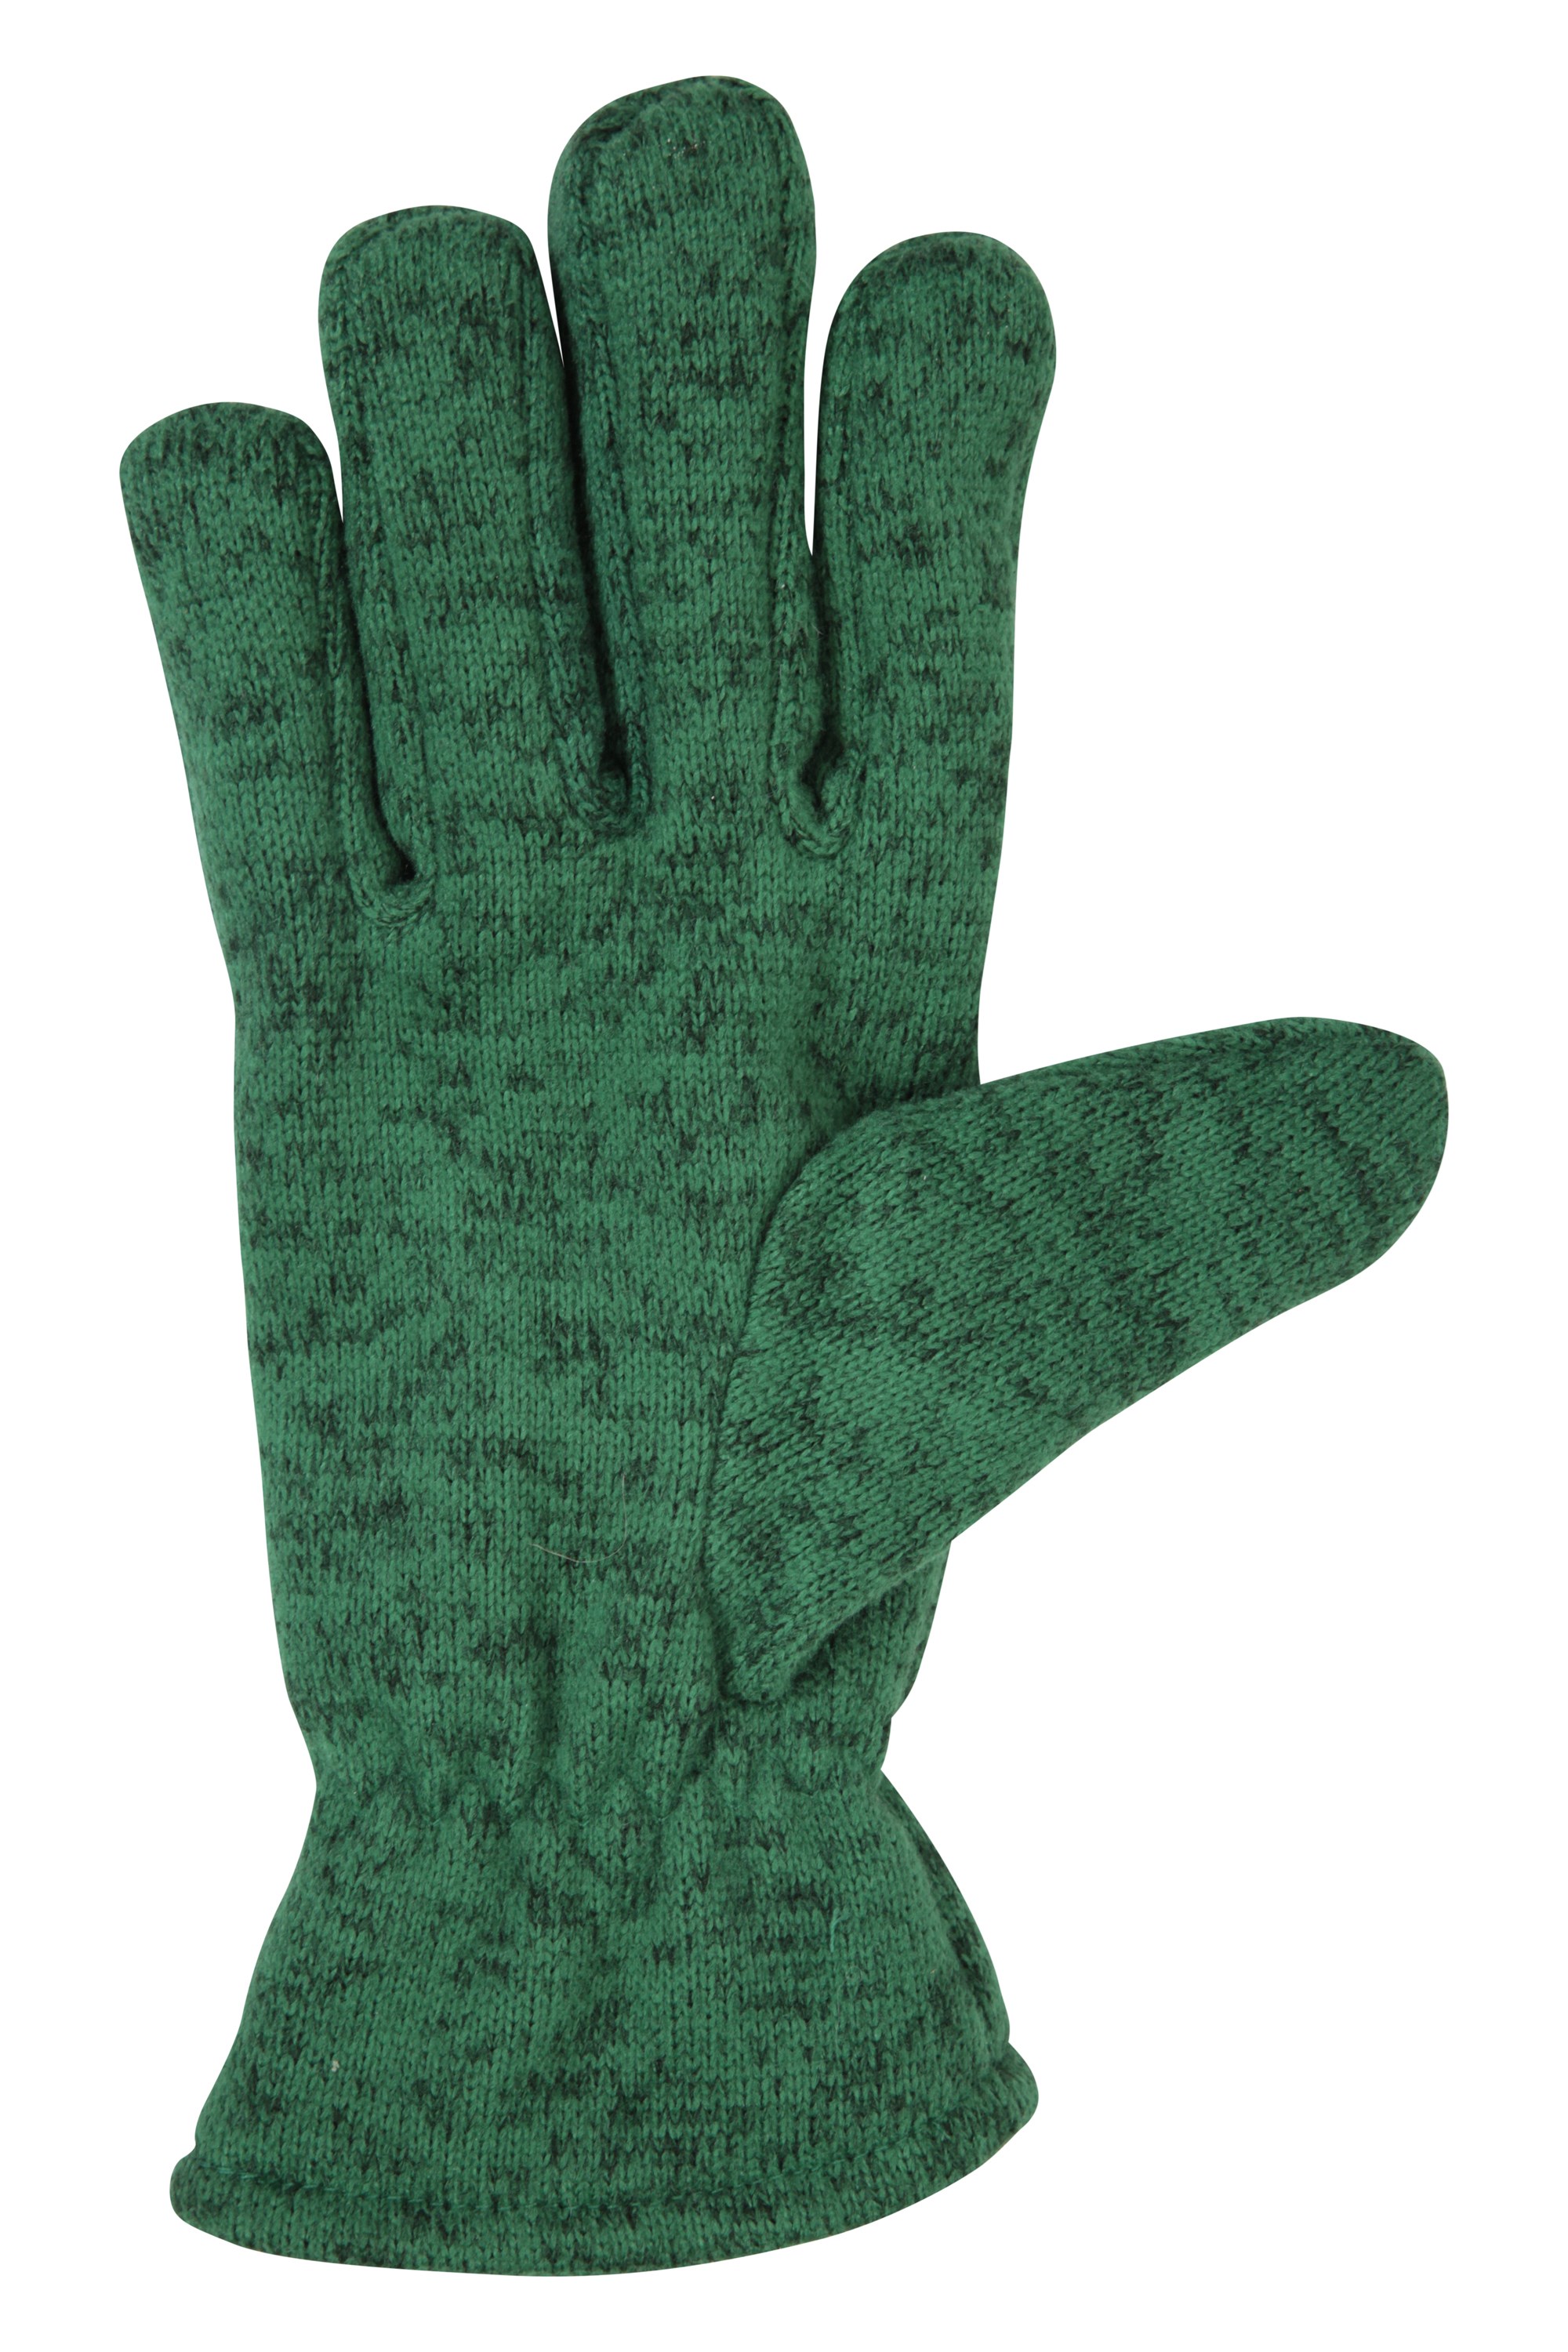 Mountain Warehouse Womens Lightweight Nevis Fleece Gloves with Elasticated Cuffs 